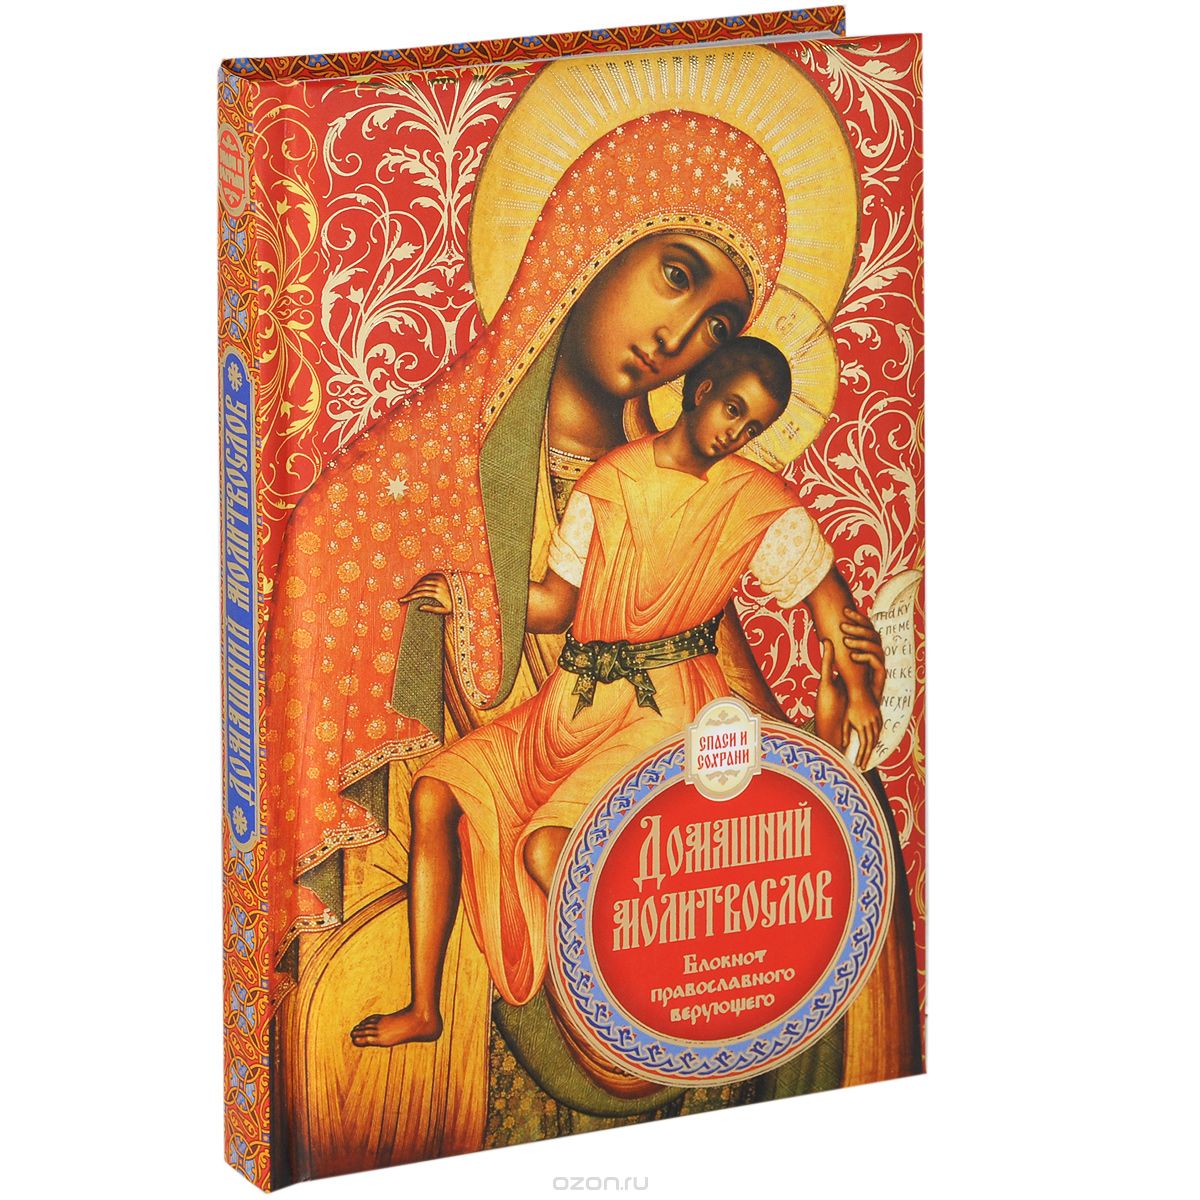 Скачать книгу "Домашний молитвослов. блокнот православного верующего"